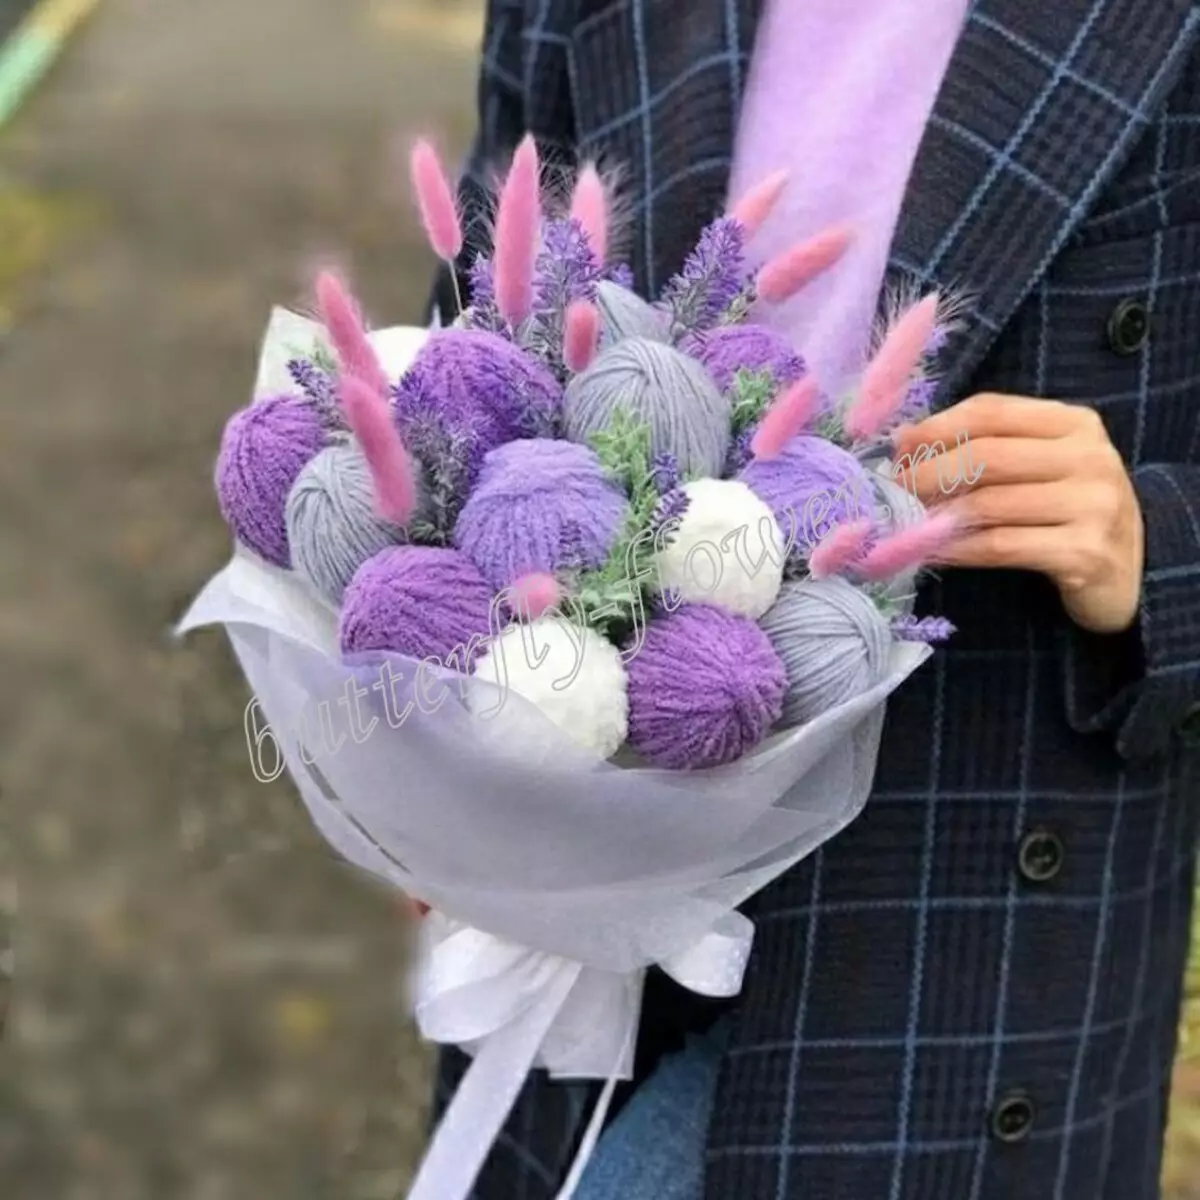 원사의 꽃다발 (29 사진) : knitters 클럽에서. 할머니를위한 꽃다발을 어떻게 만드는가? 3 월 8 일에 선물로 꽃다발을 만드는 지침 17375_6